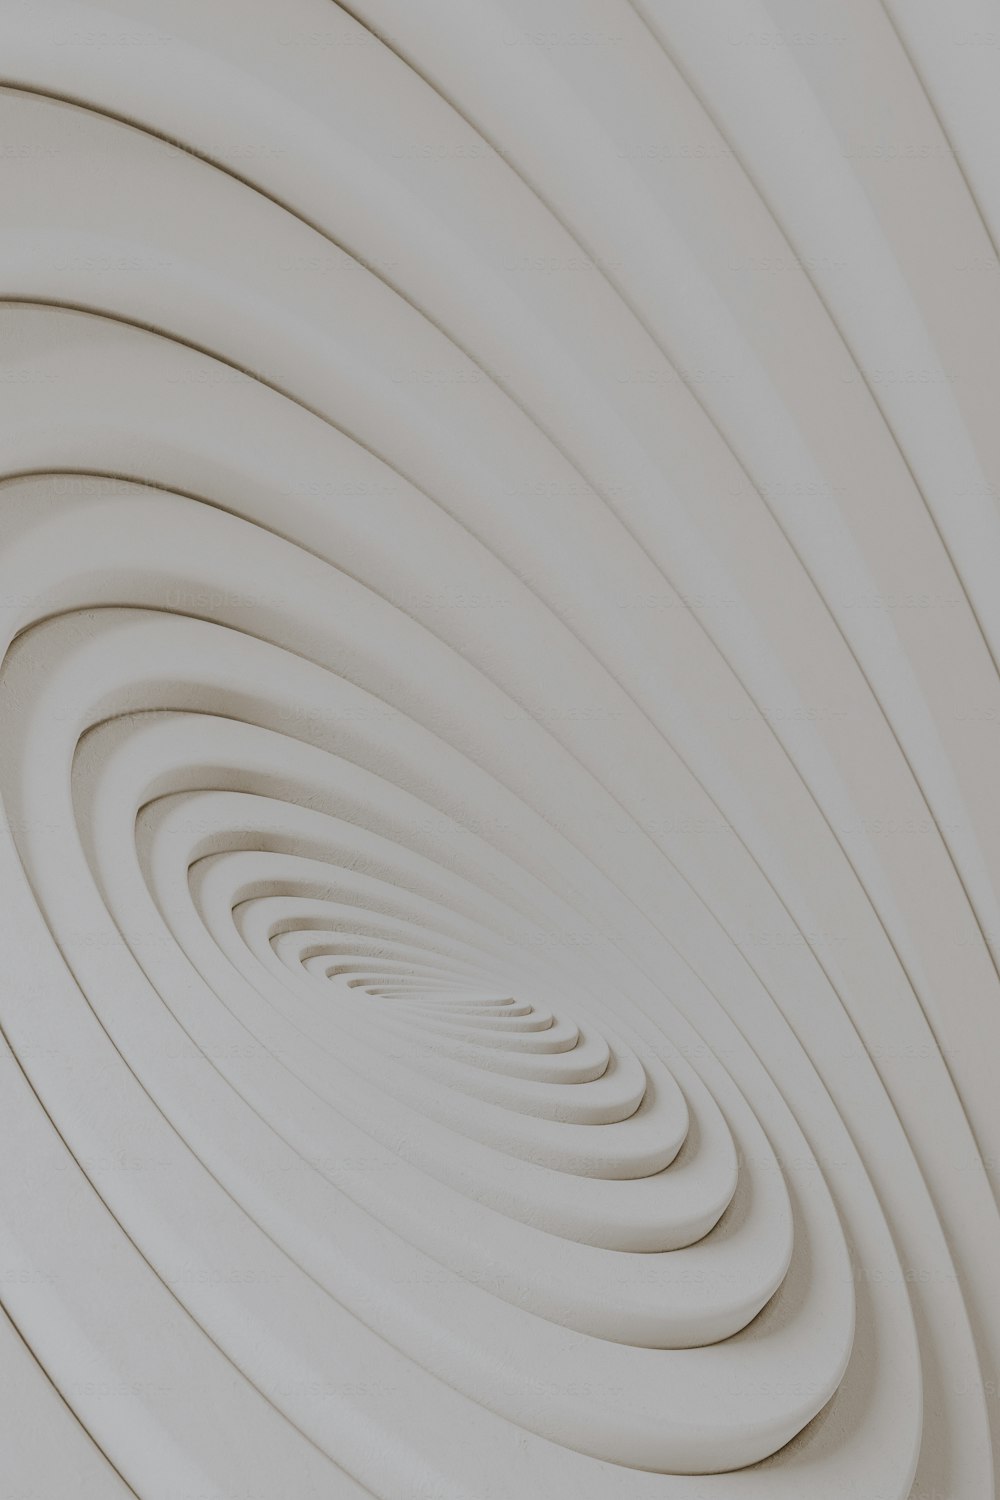 Una foto astratta di un disegno a spirale bianca